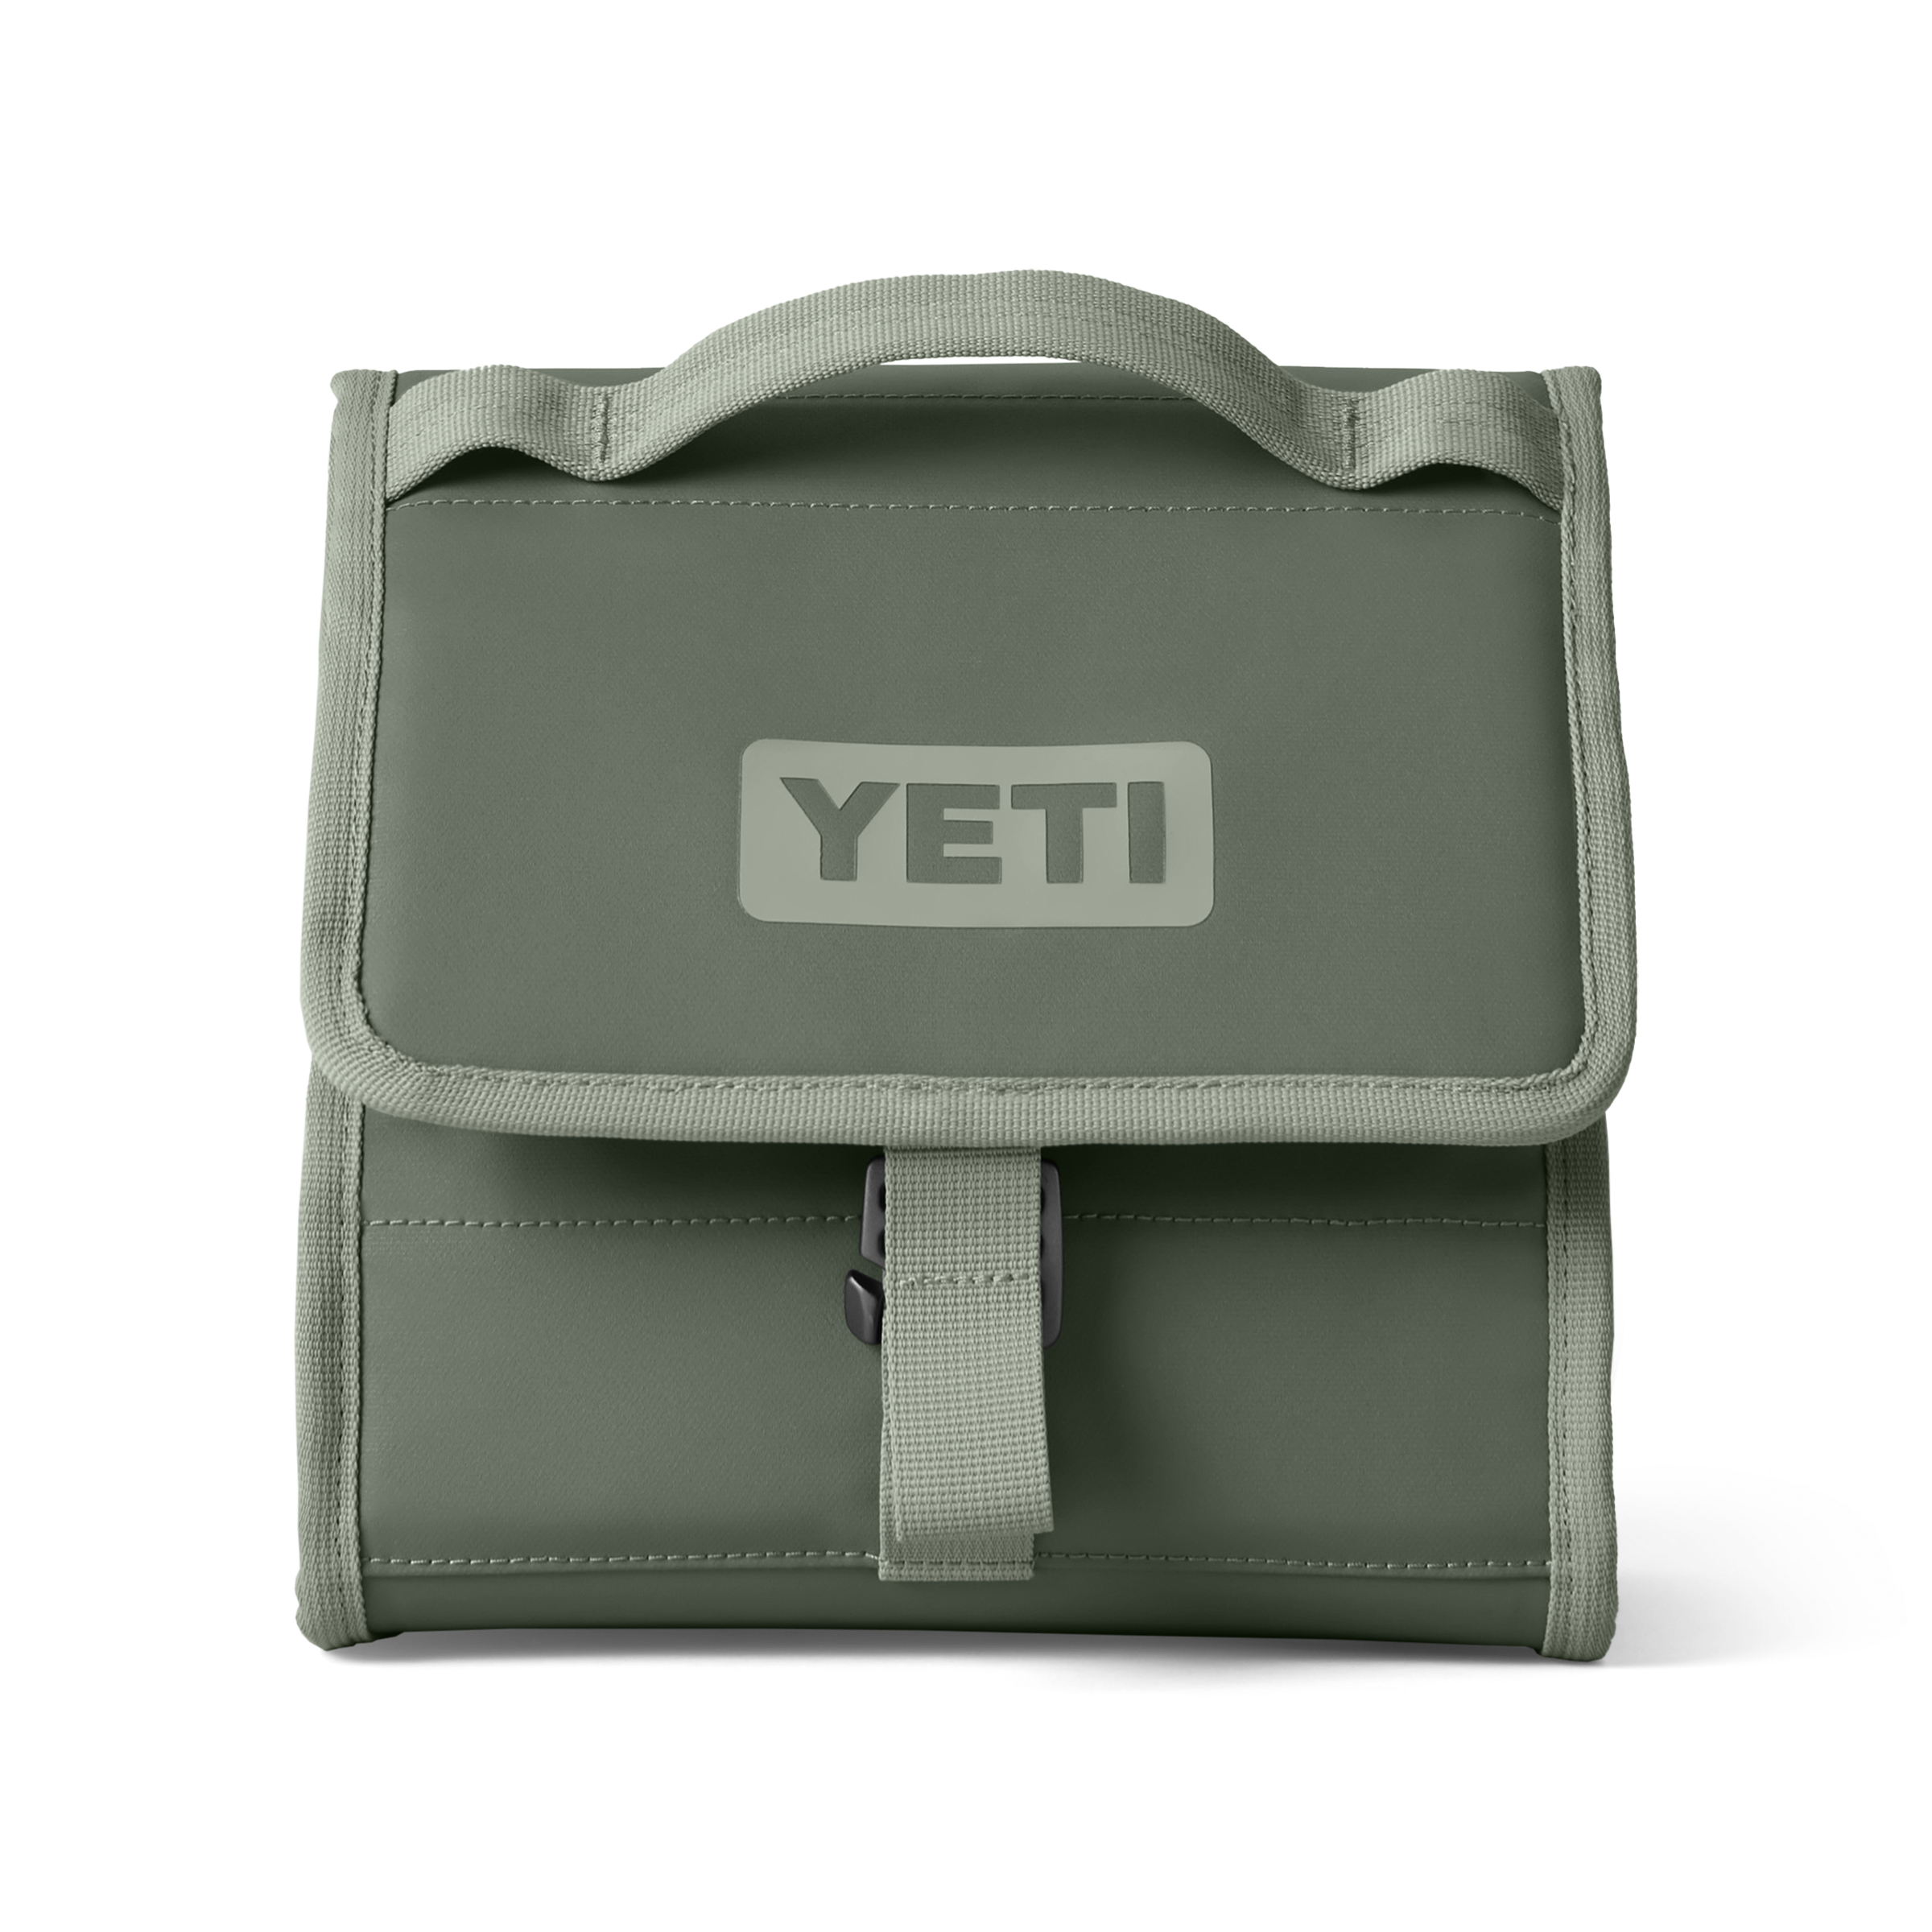 YETI DayTrip® Lunch Bag Camp Green